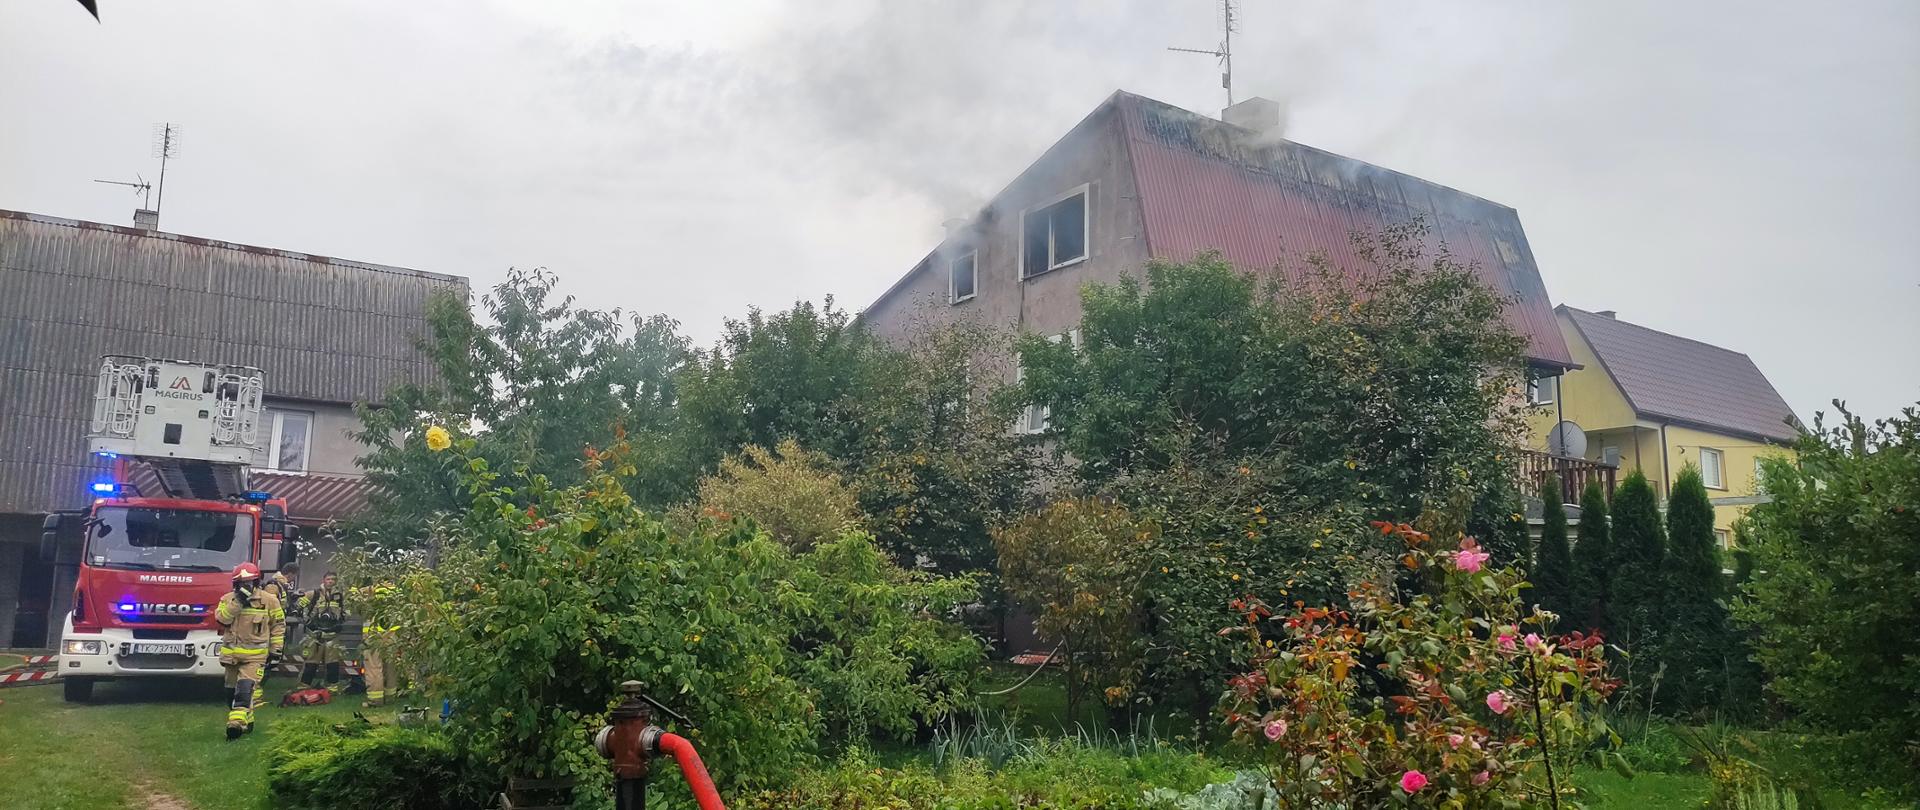 Zdjęcie przedstawia budynek, w którym wybuchł pożar. Dym unosi się ze zniszczonego dachu. Po lewej stronie zaparkowany stoi samochód pożarniczy.